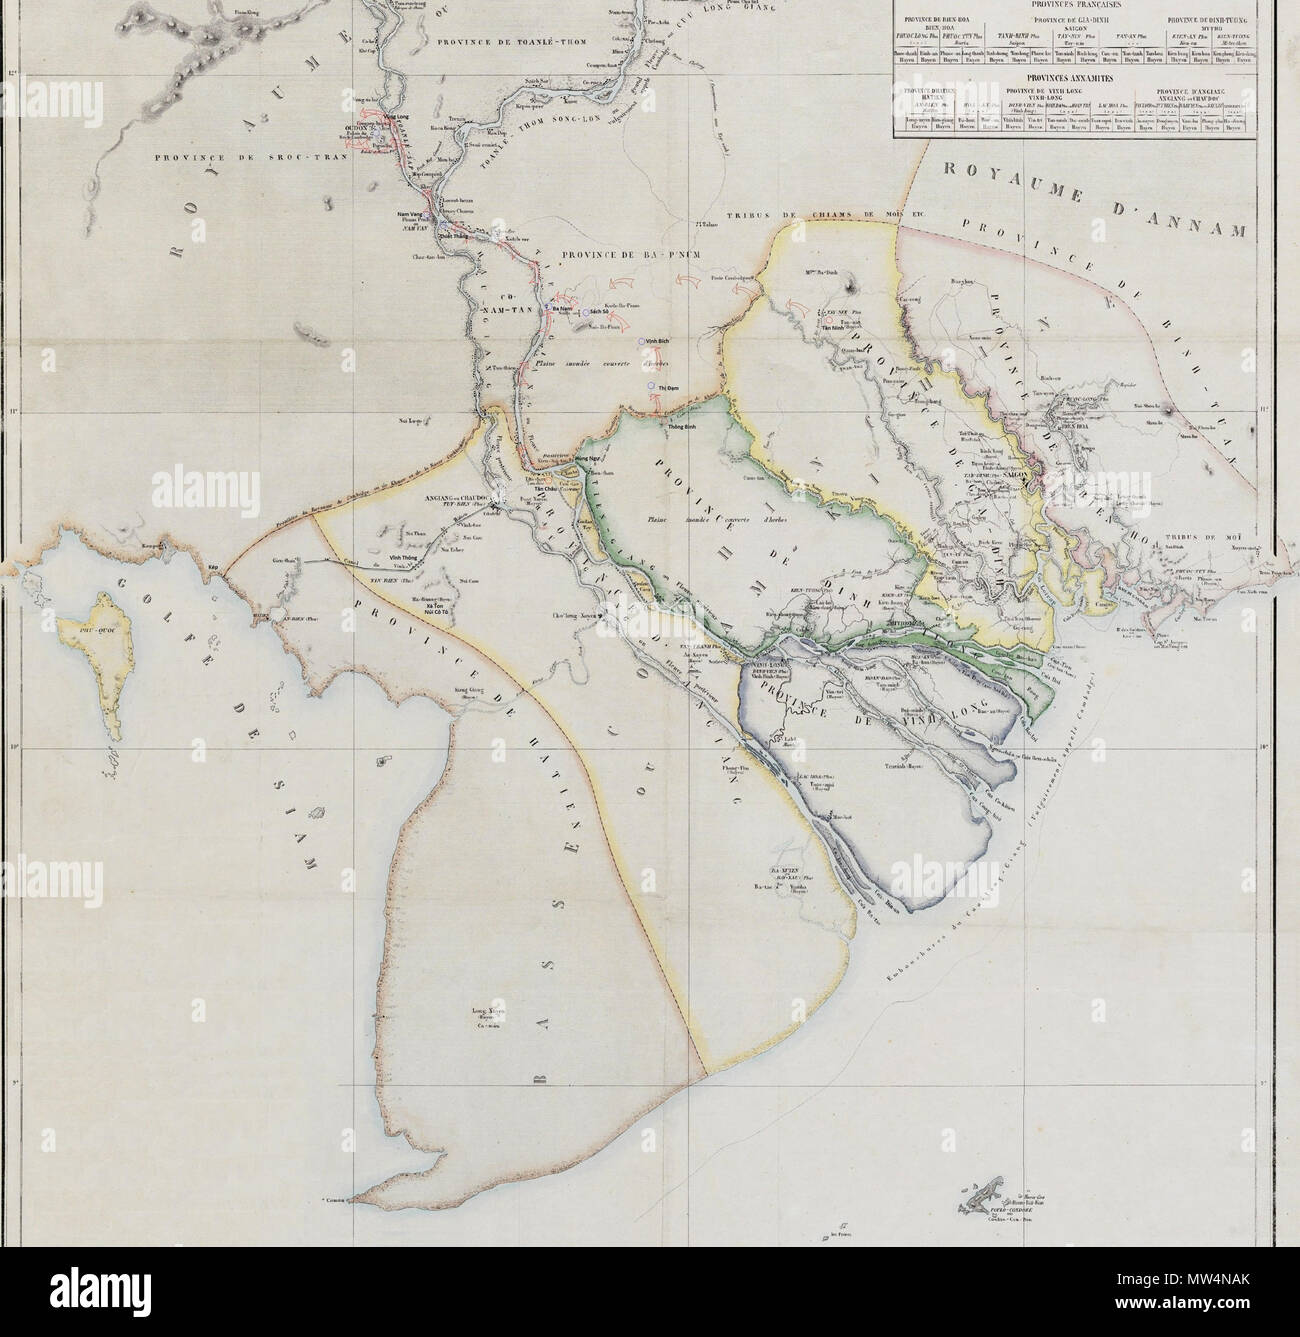 . Tiếng Việt: Bản đồ diễn biến phần sau (từ tháng 6 đến tháng 12 năm 1845) của chiến tranh Việt-Xiêm (1841=1845). ngày 2 tháng 12 năm 2014.. Doãn Hiệu 631 VietXiem1845 Stock Photo